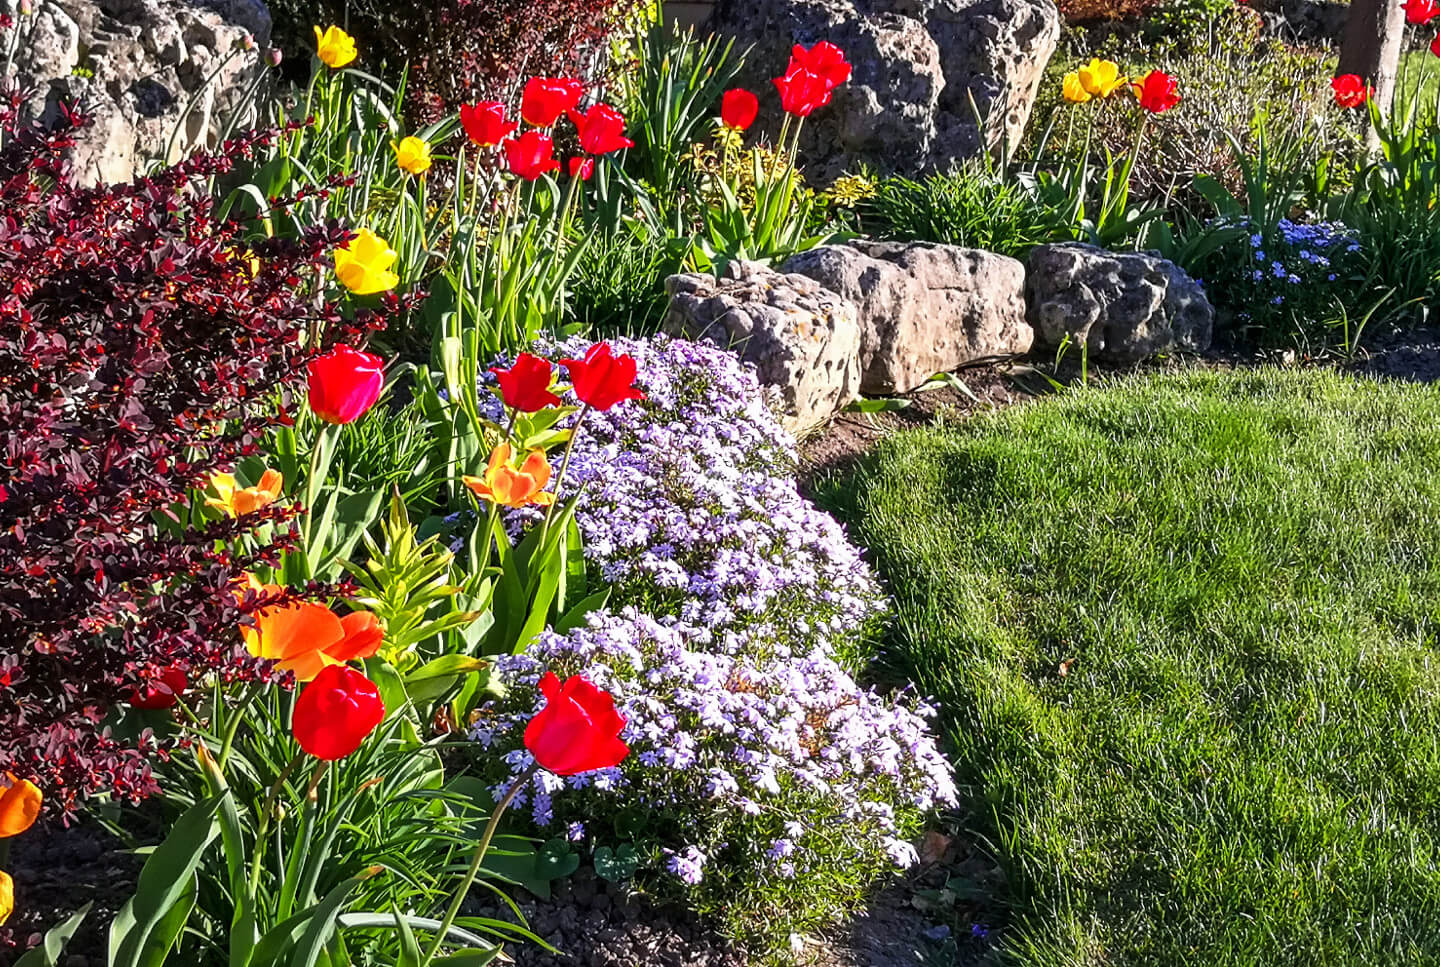 Udsnit af græsplæne, omkranset af blomsterbed med blandt andet tulipaner